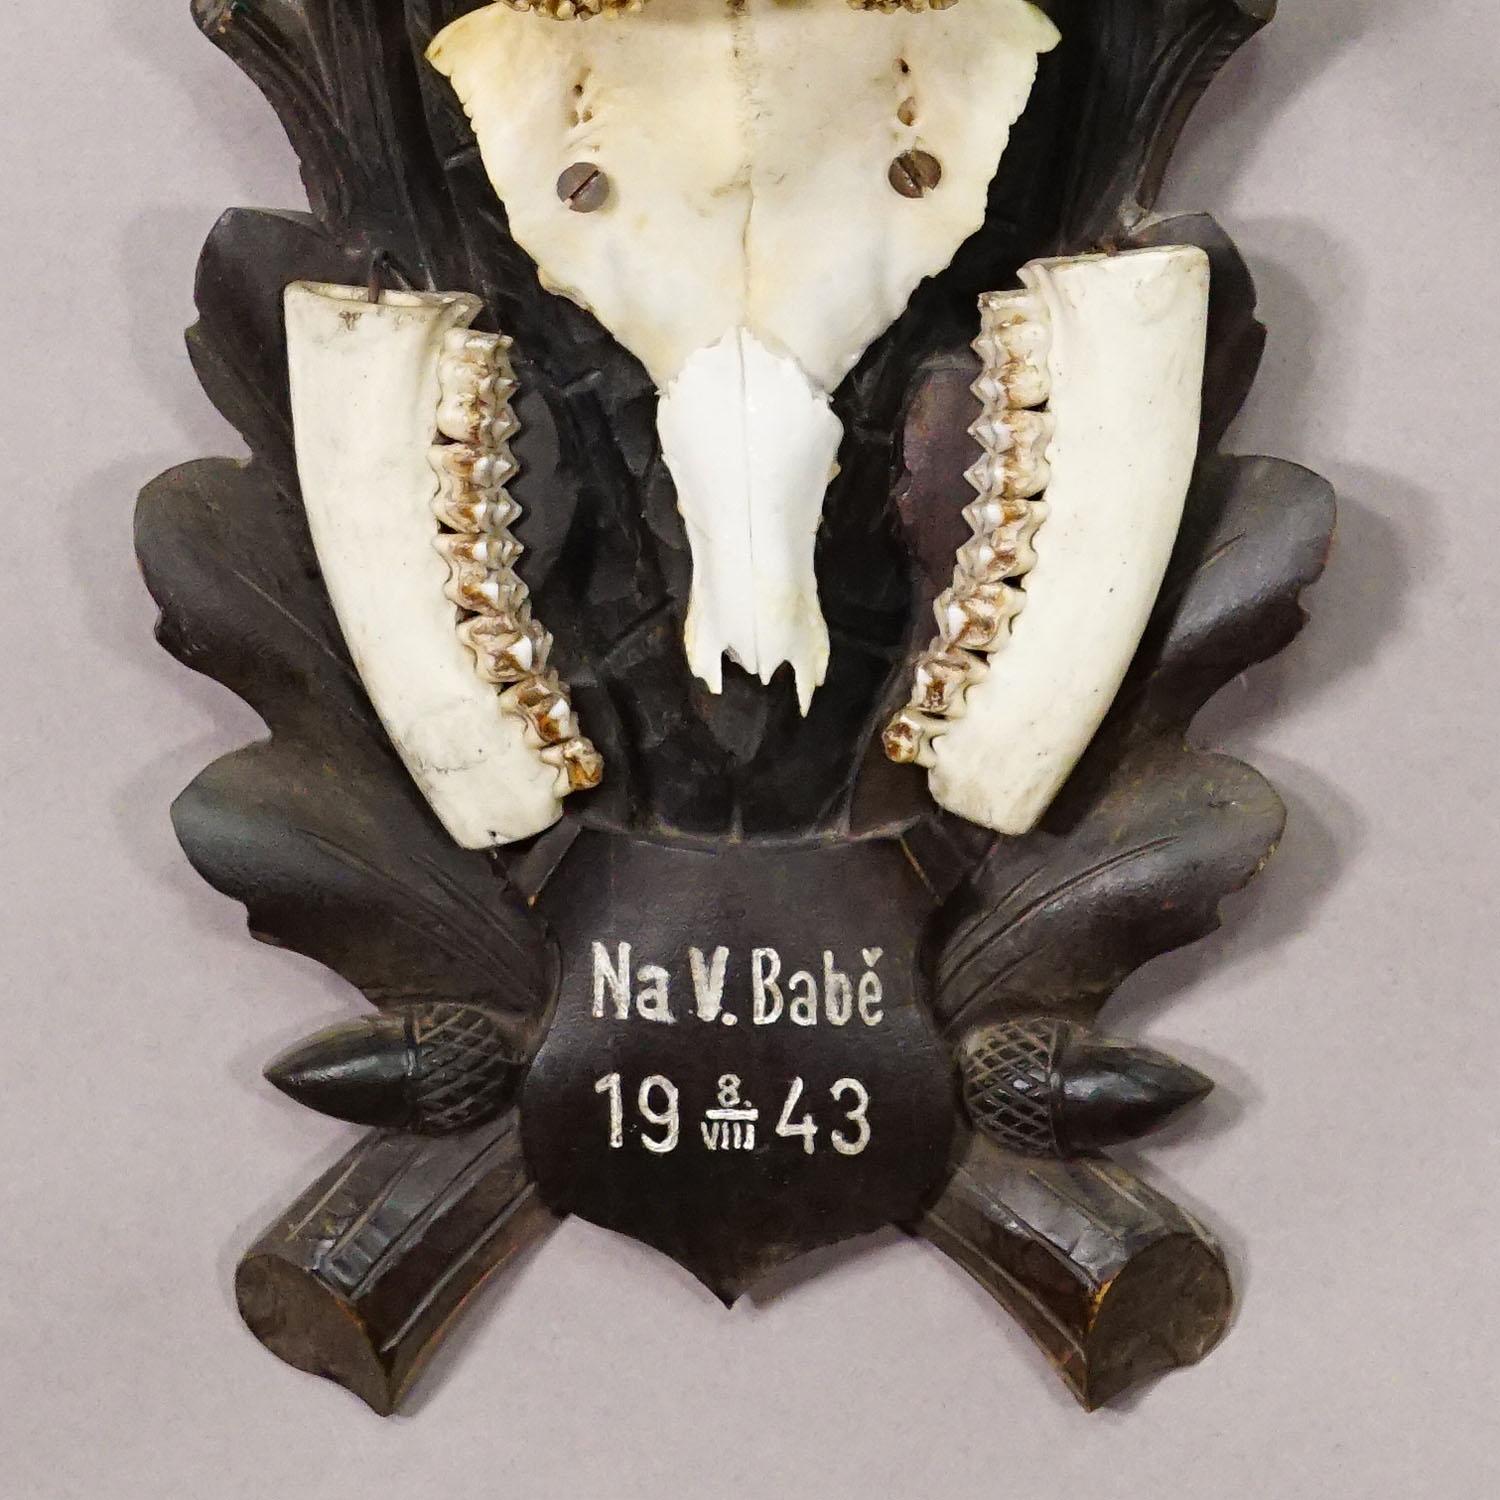 19th Century Black Forest Vintage Deer Trophy on Carved Plaque 1943 For Sale